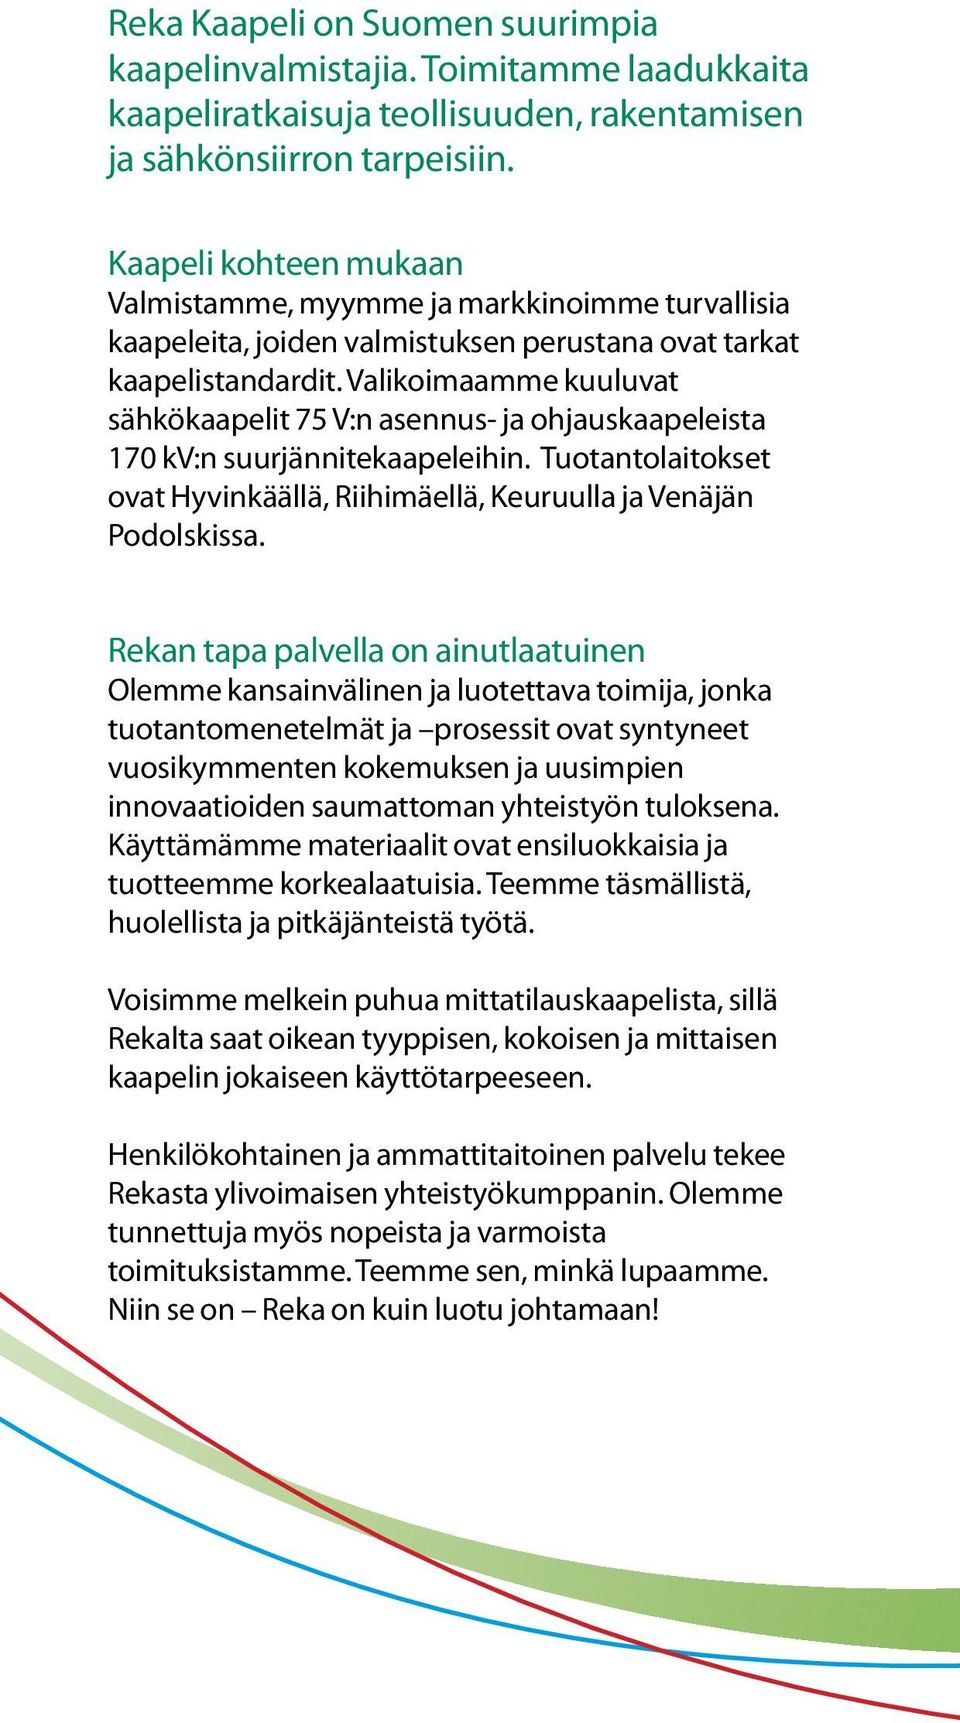 Valikoiaae kuuluvat sähkökaapelit 75 V:n asennus- ja ohjauskaapeleista 170 kv:n suurjännite kaapeleihin. Tuotantolaitokset ovat Hyvinkäällä, Riihiäellä, Keuruulla ja Venäjän Podolskissa.